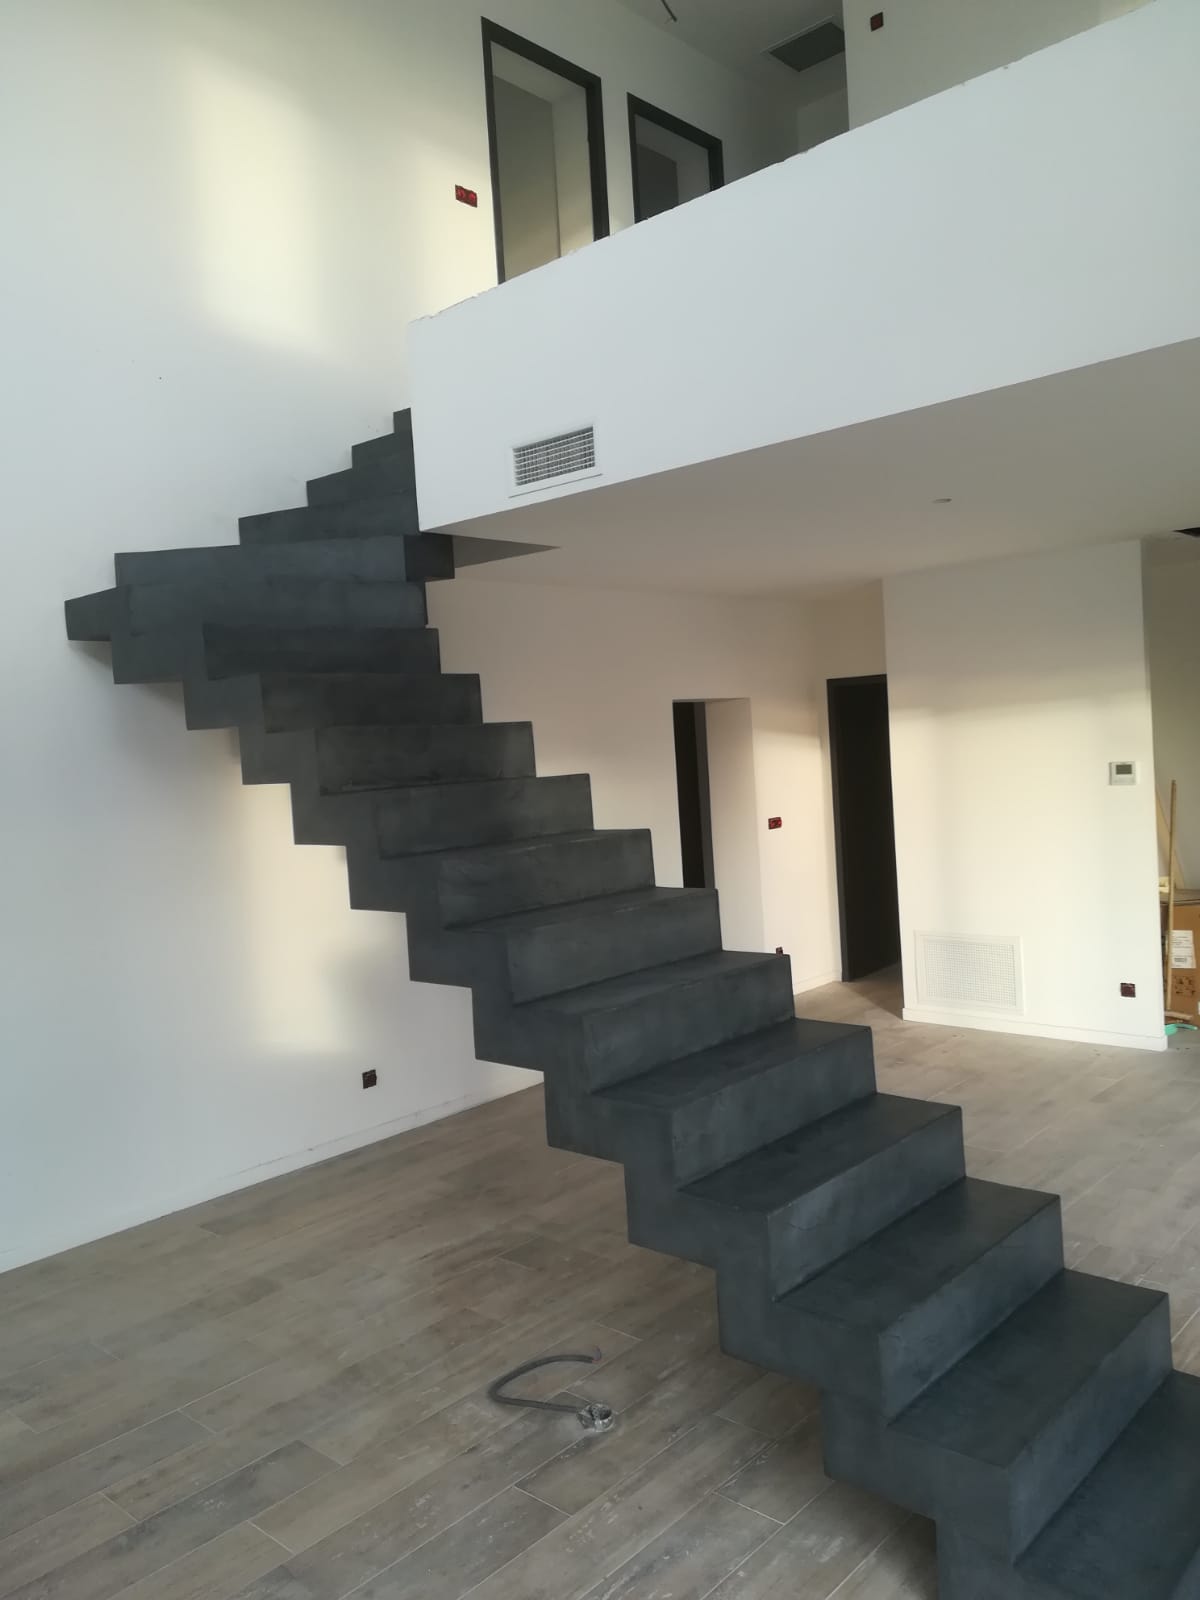 audacieux escalier crémaillère contemporain en béton ciré vernis mat couleur alchimie pour un particulier